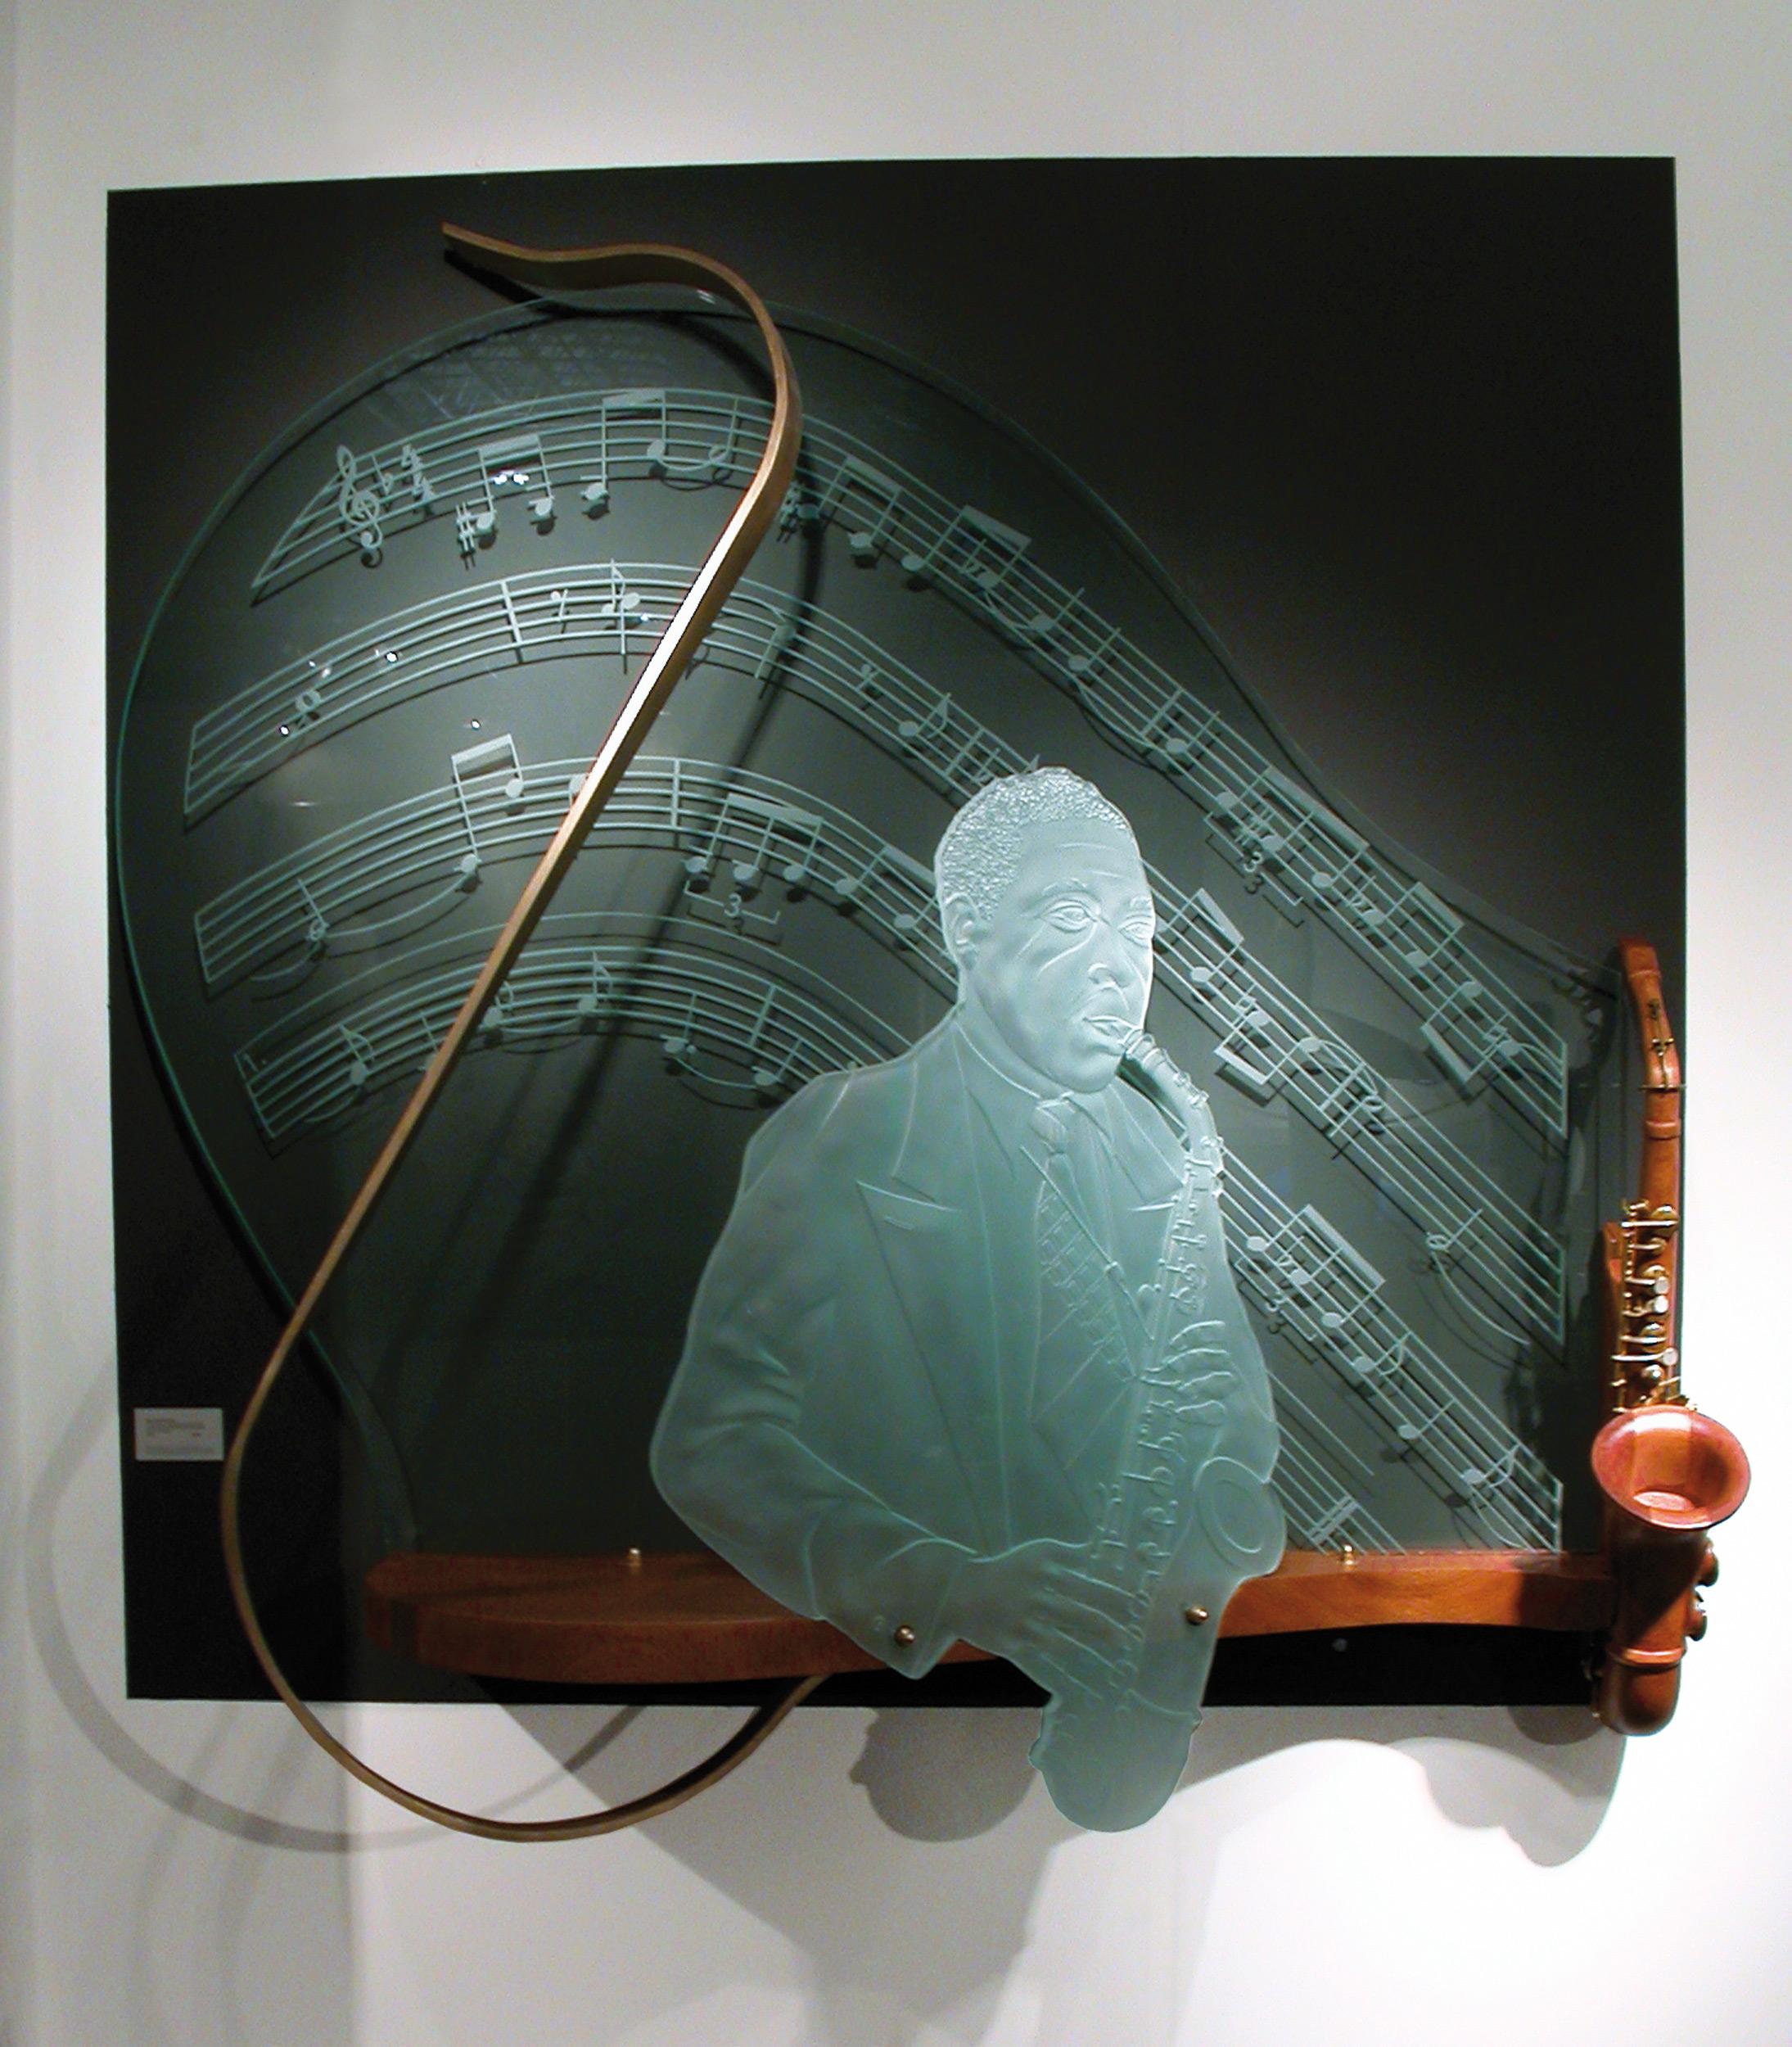 Steve Linn Figurative Sculpture - "12 Bar Blues for Bird" sculpture portrait of Charlie Parker